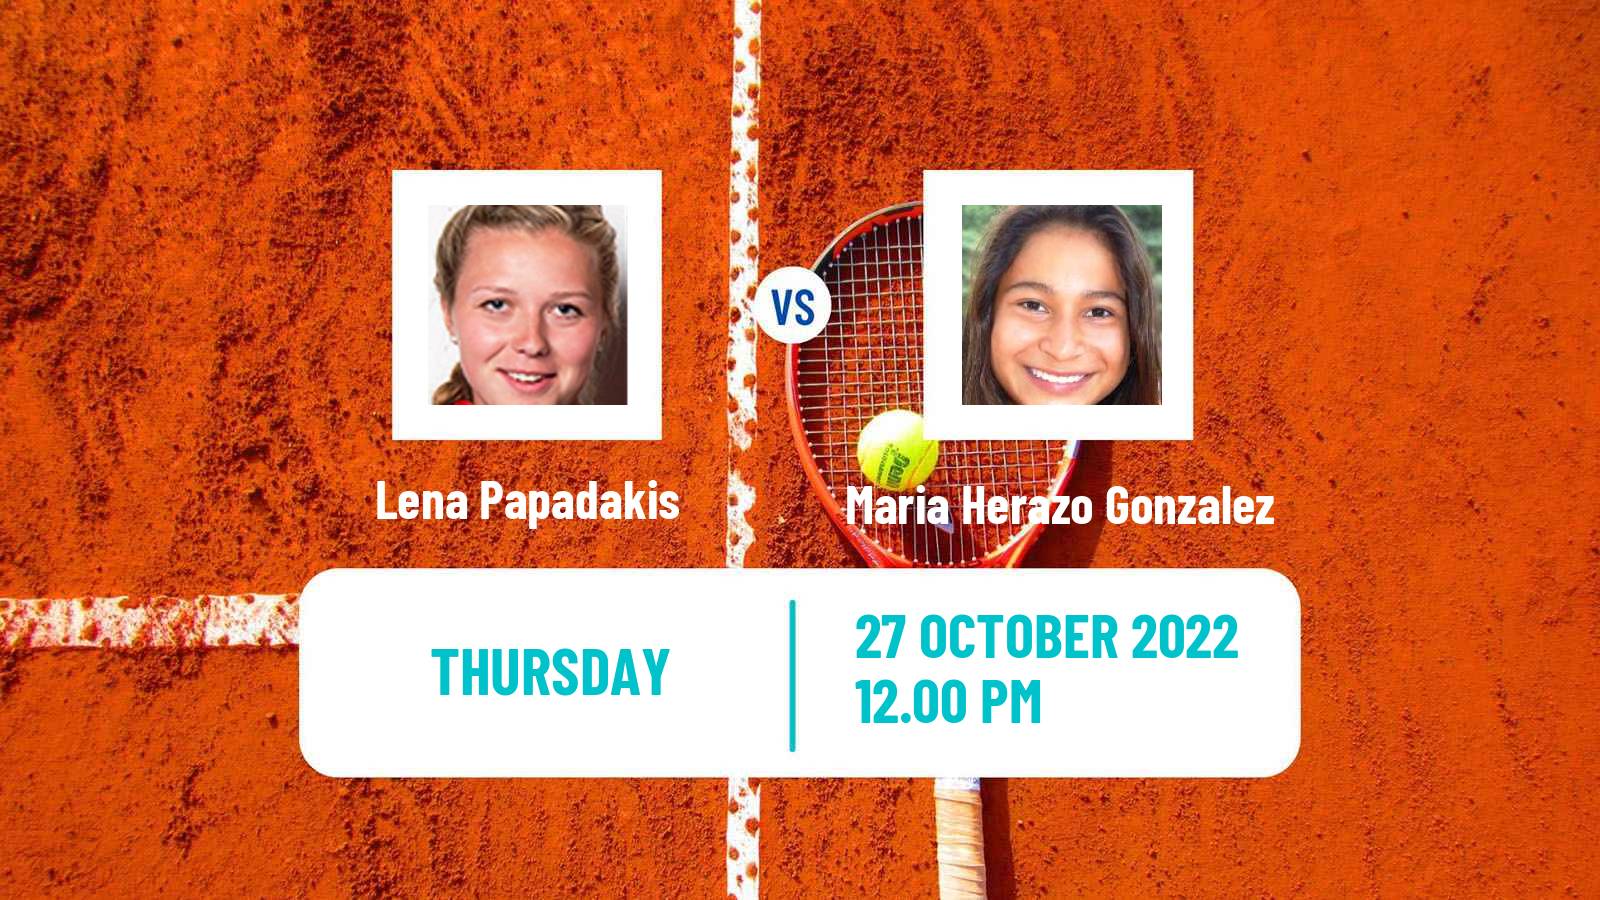 Tennis ITF Tournaments Lena Papadakis - Maria Herazo Gonzalez